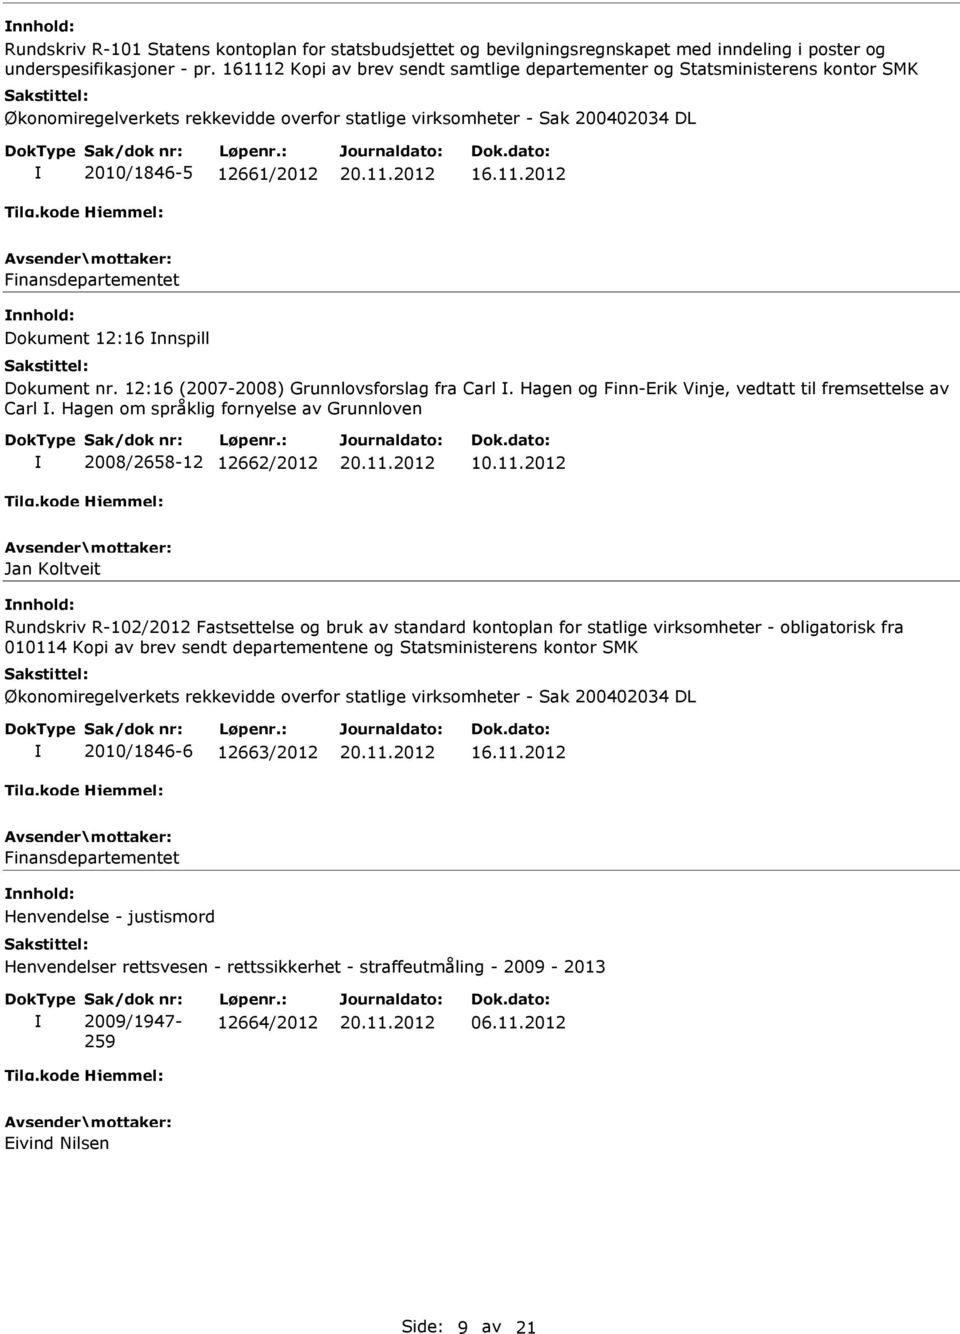 12:16 (2007-2008) Grunnlovsforslag fra Carl. Hagen og Finn-Erik Vinje, vedtatt til fremsettelse av Carl. Hagen om språklig fornyelse av Grunnloven 2008/2658-12 12662/2012 10.11.